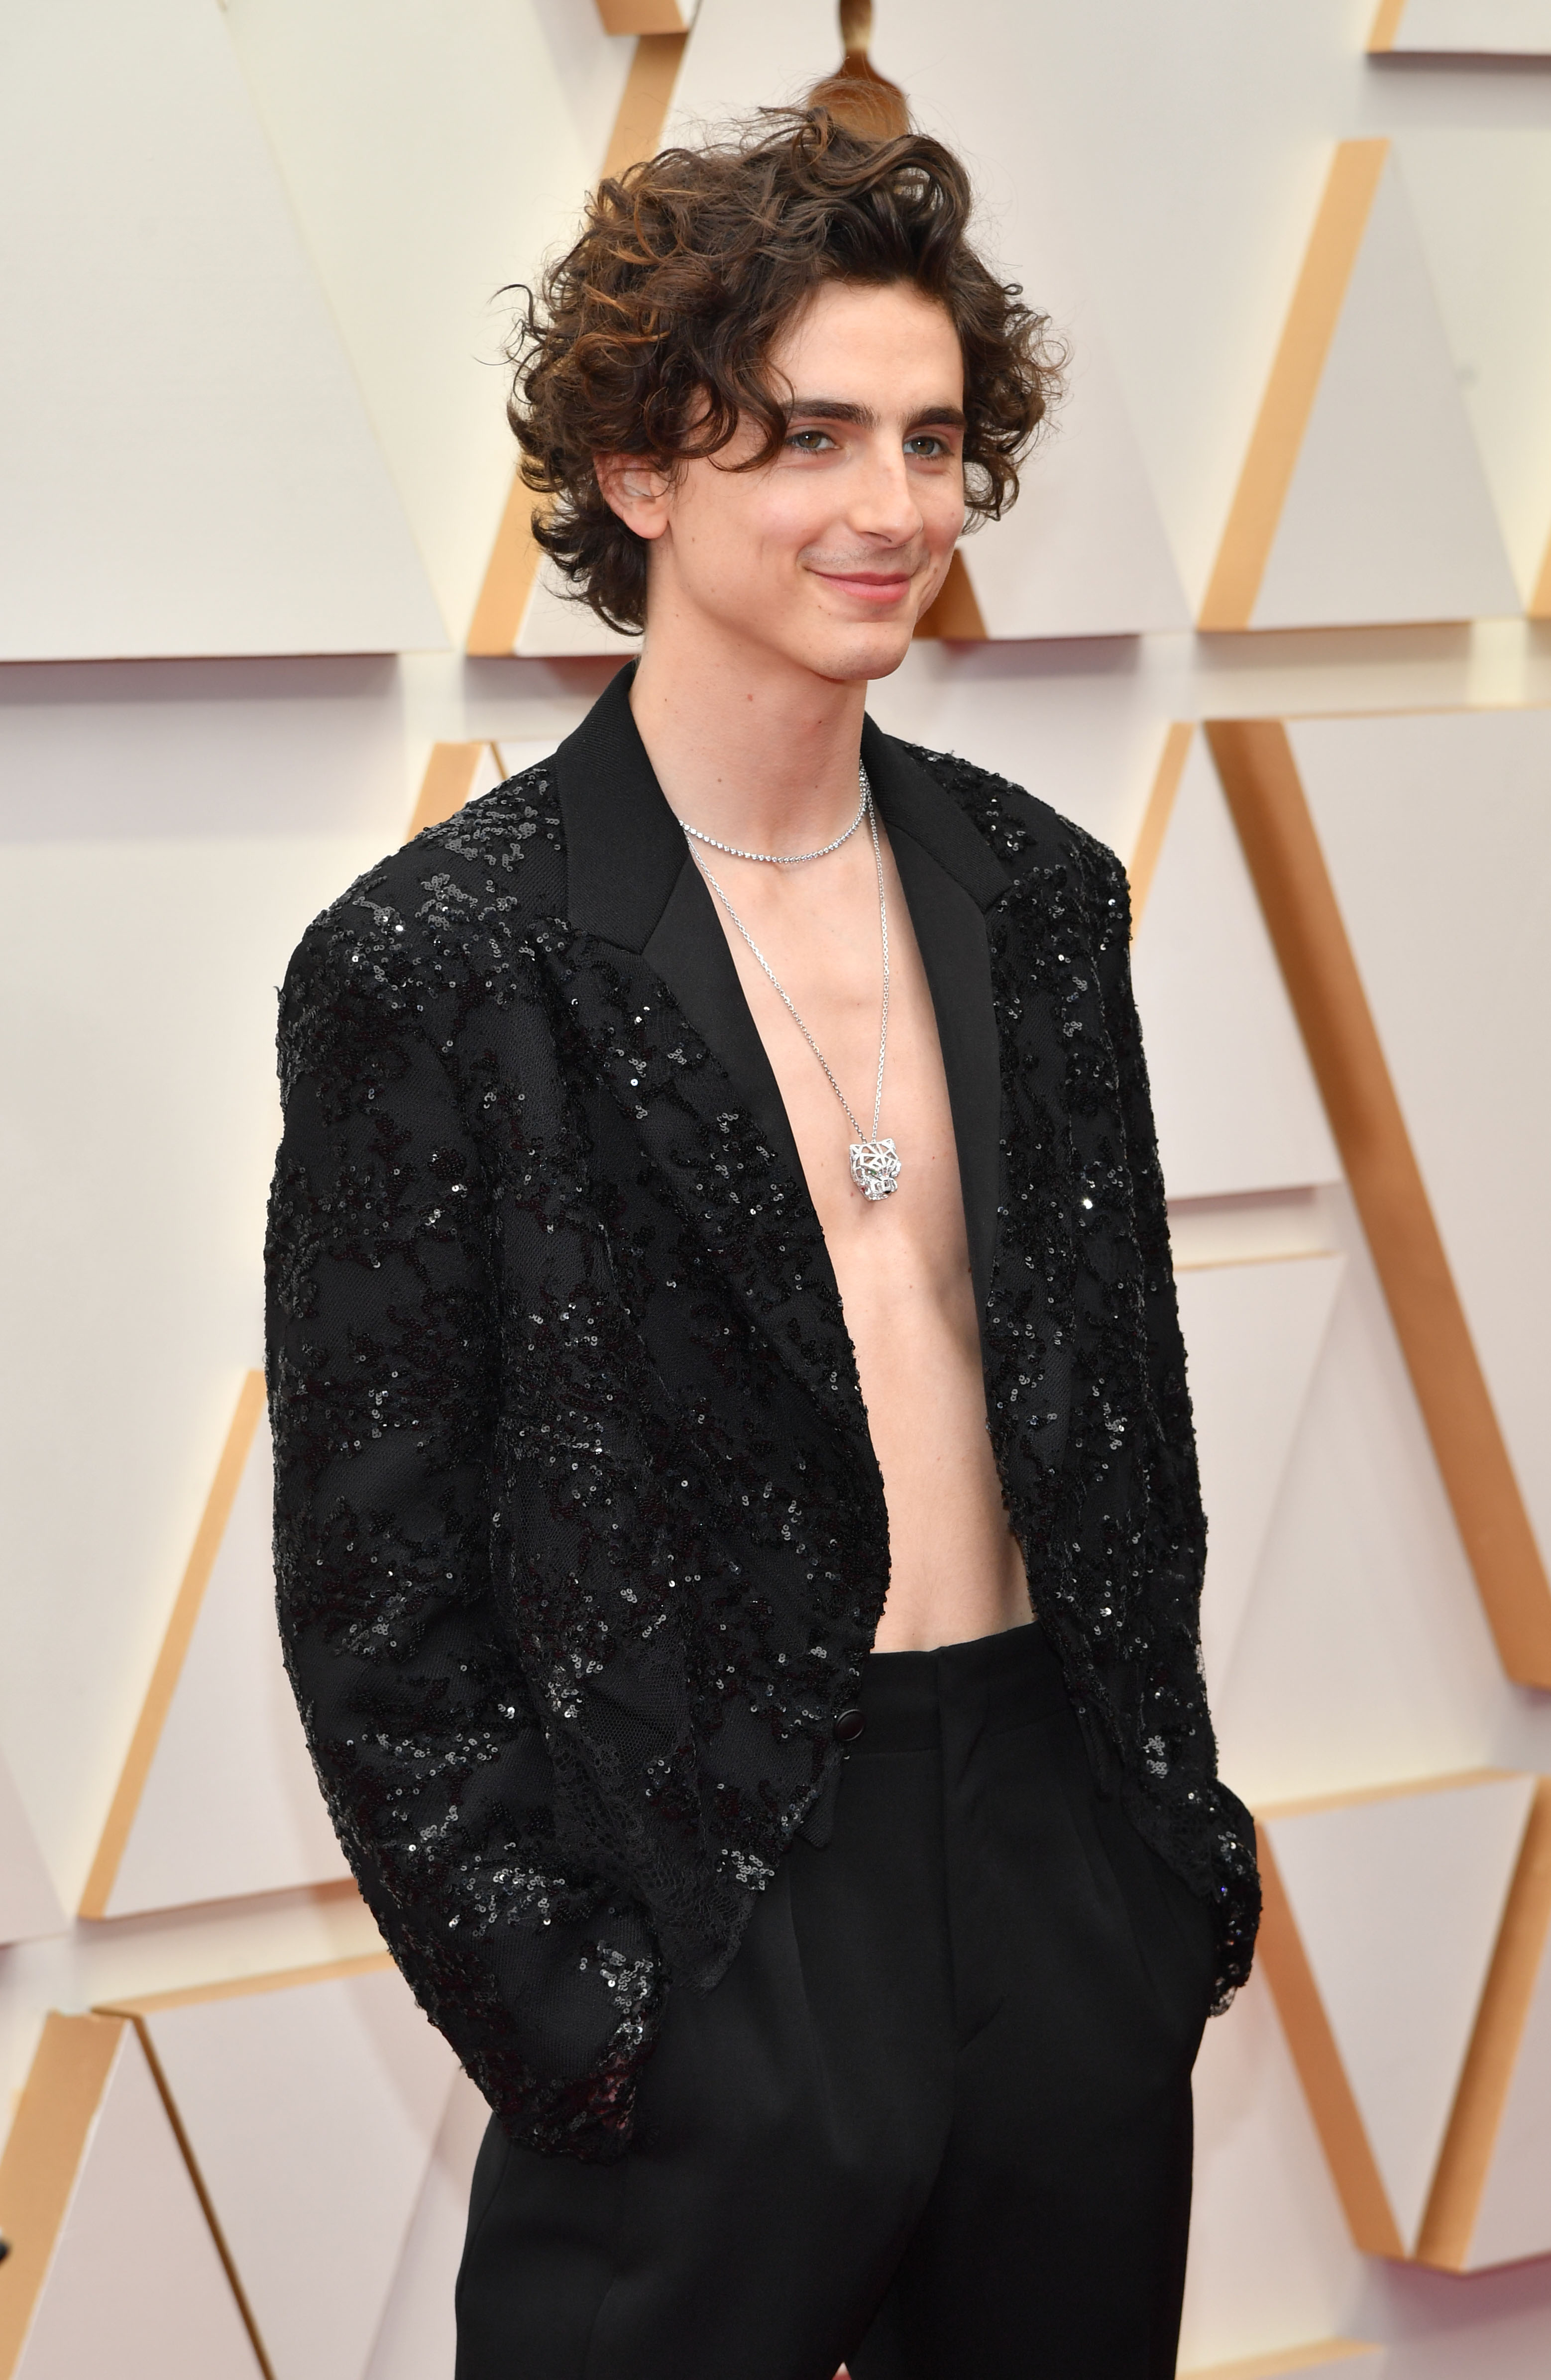 Timothée Chalamet Attends 2022 Oscars Shirtless